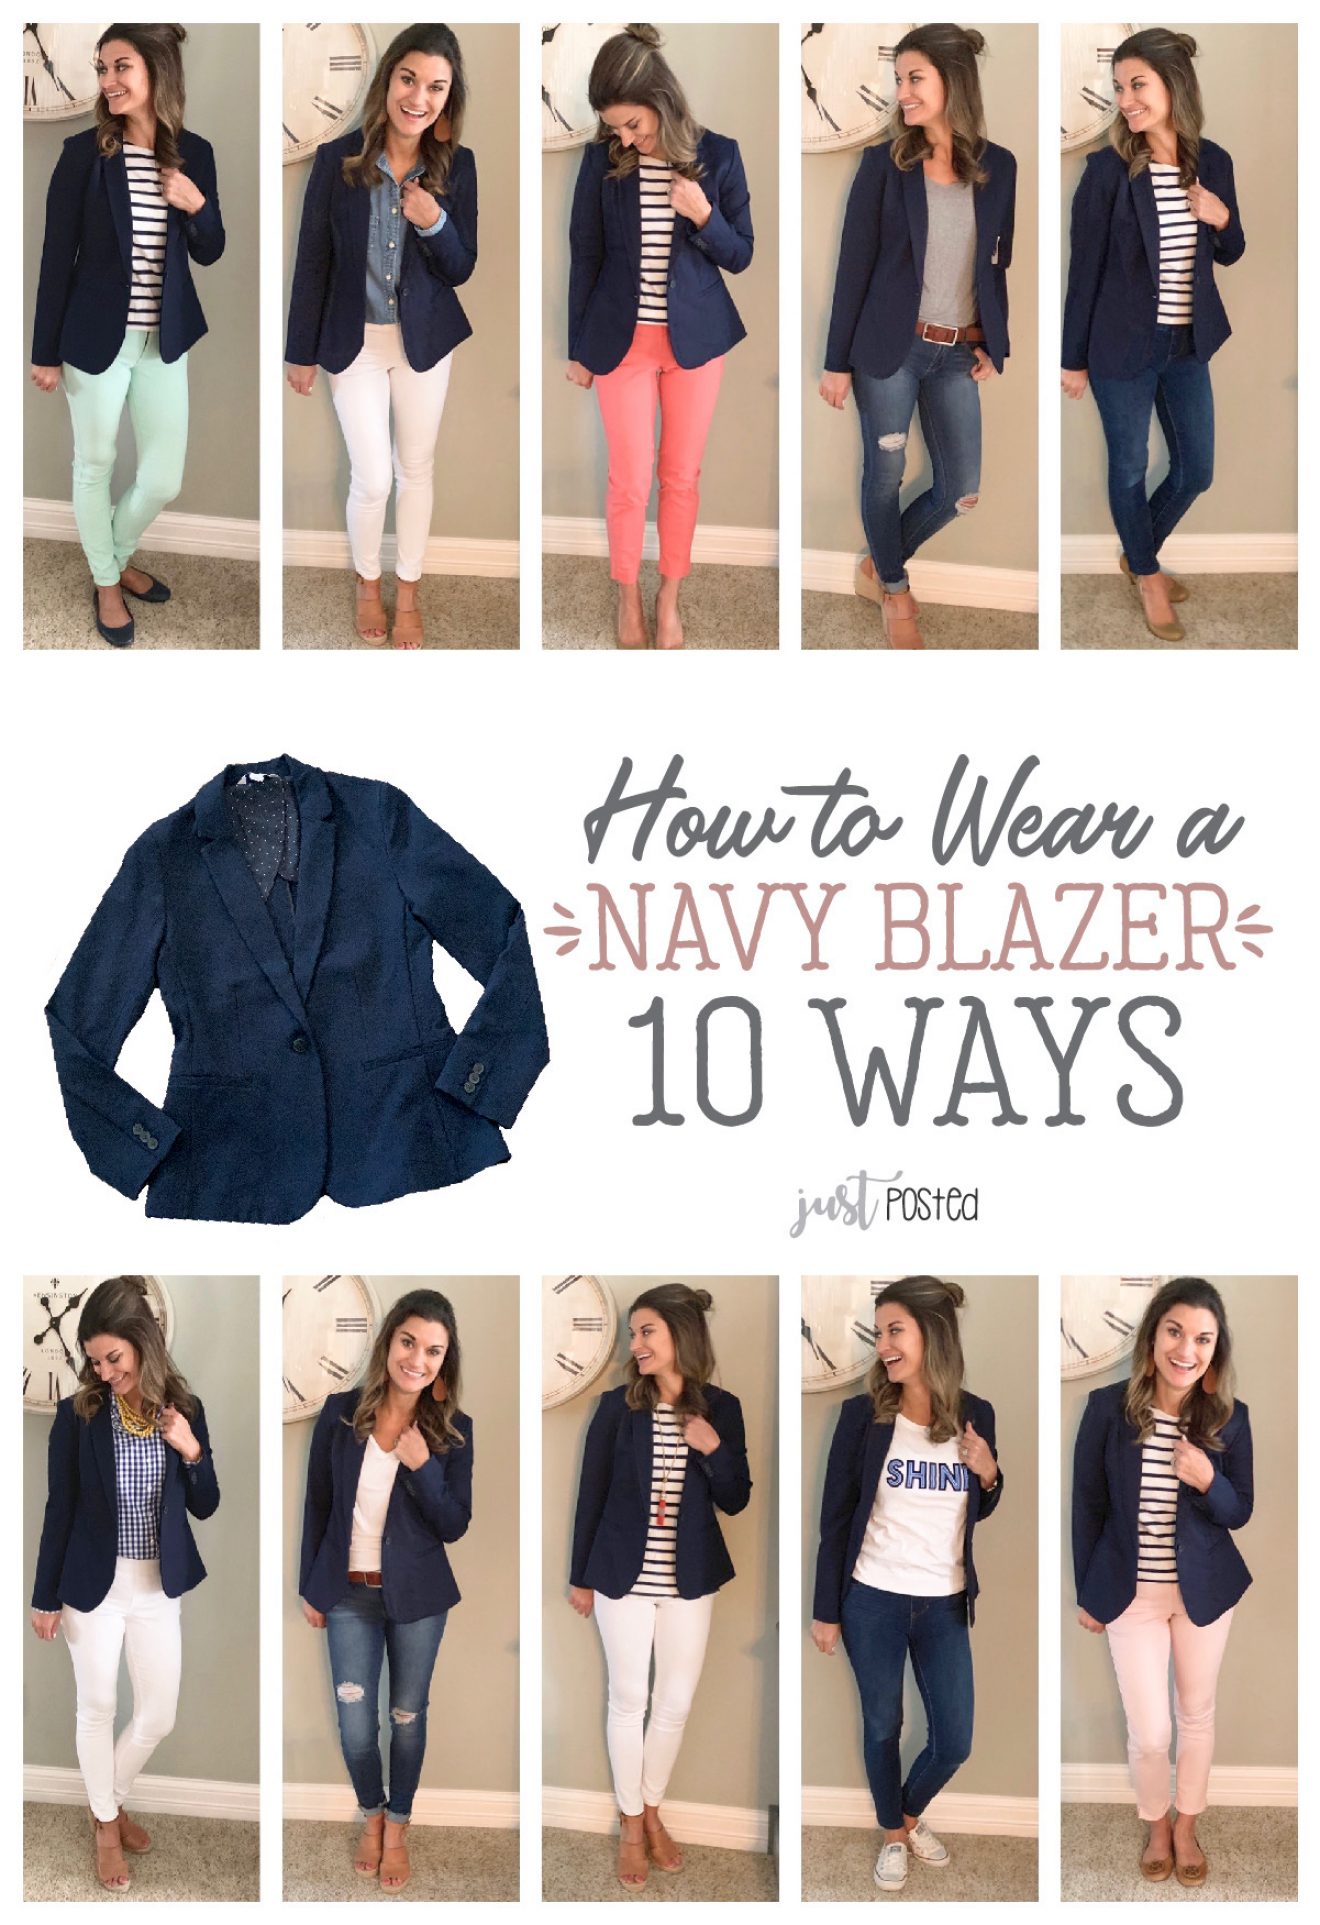 One Navy Blazer, Ten Ways – Just Posted